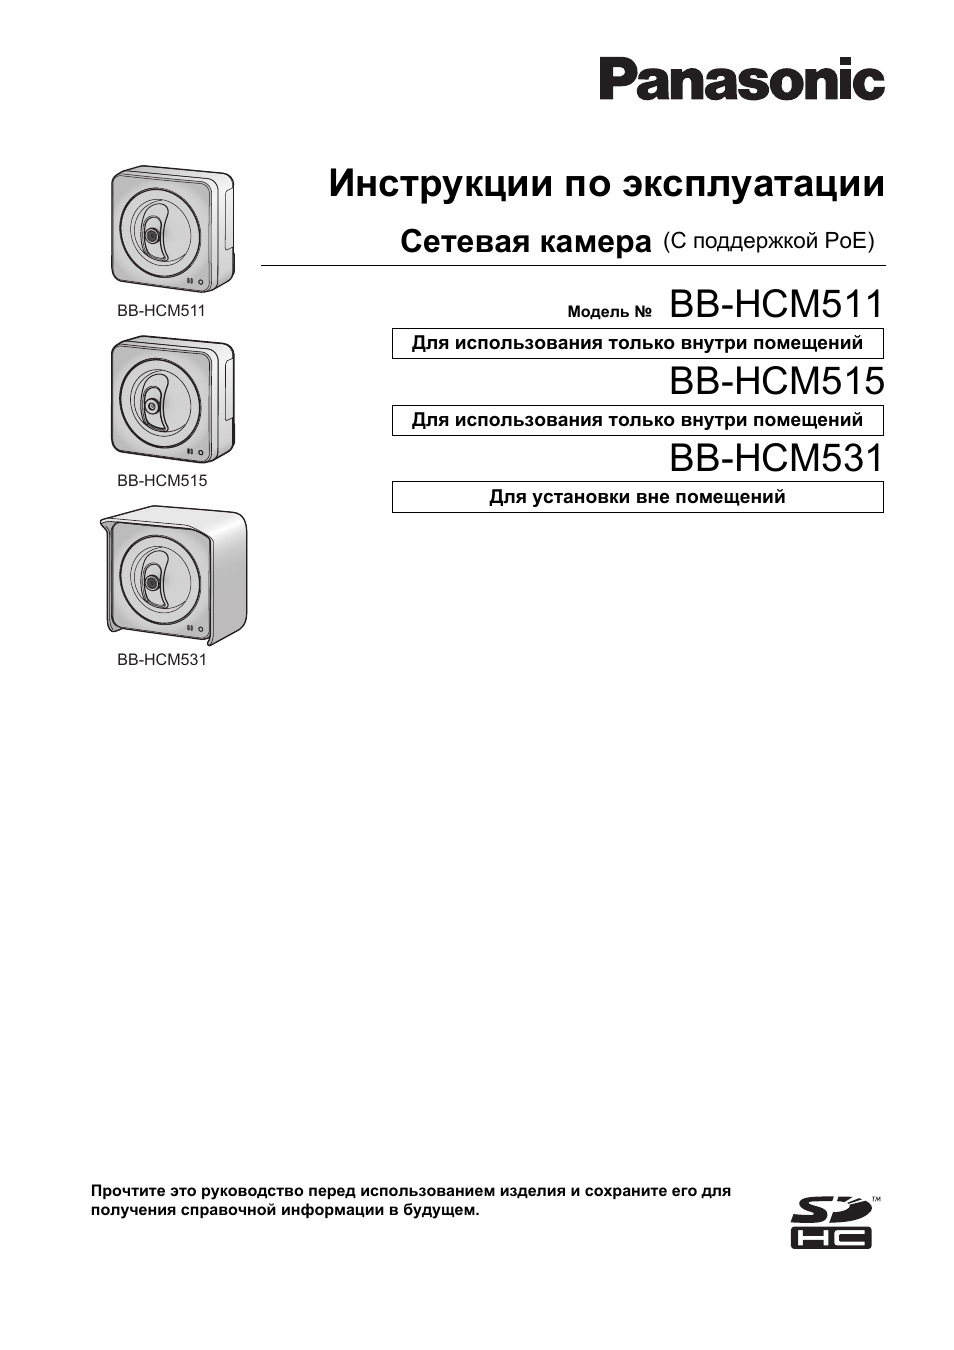 Инструкция по эксплуатации Panasonic BB-HCM511 | 196 страниц